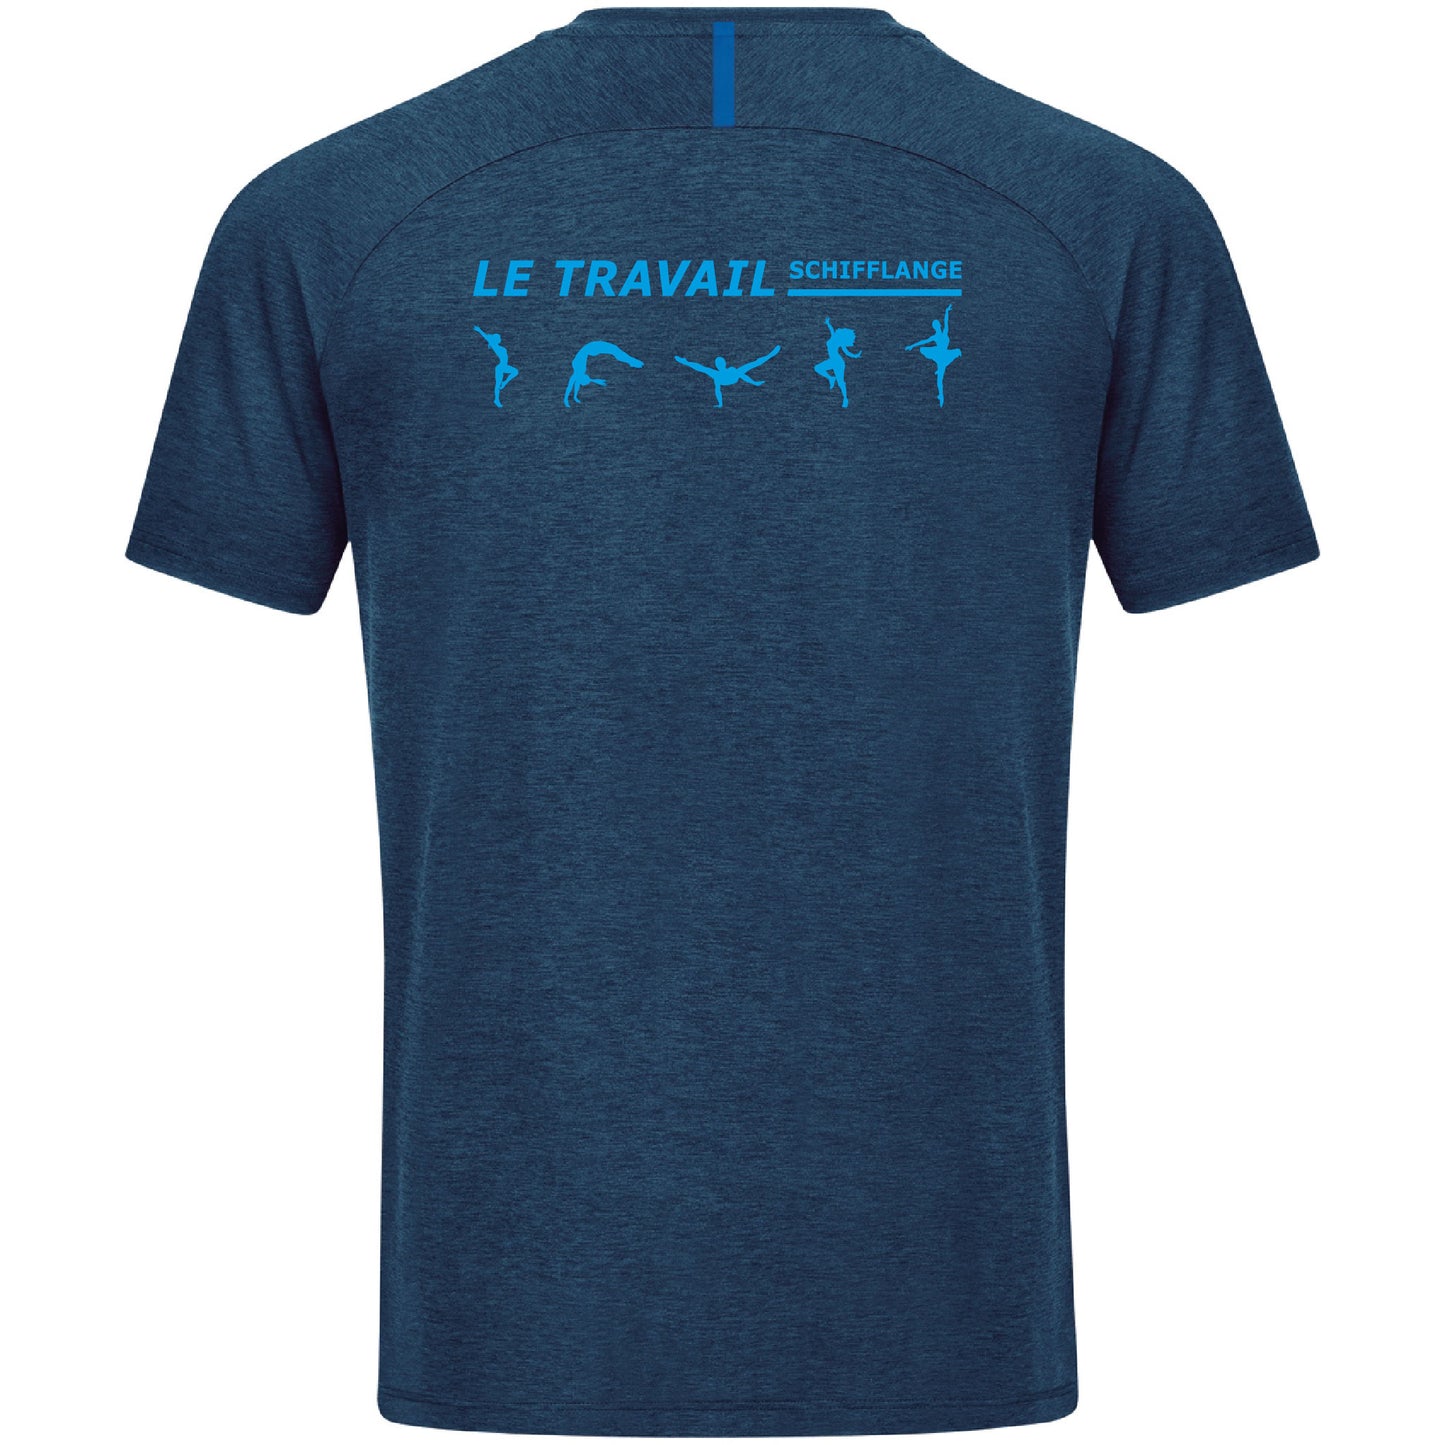 JAKO T-shirt challenge - Enfants LE TRAVAIL SCHIFF.(6121)